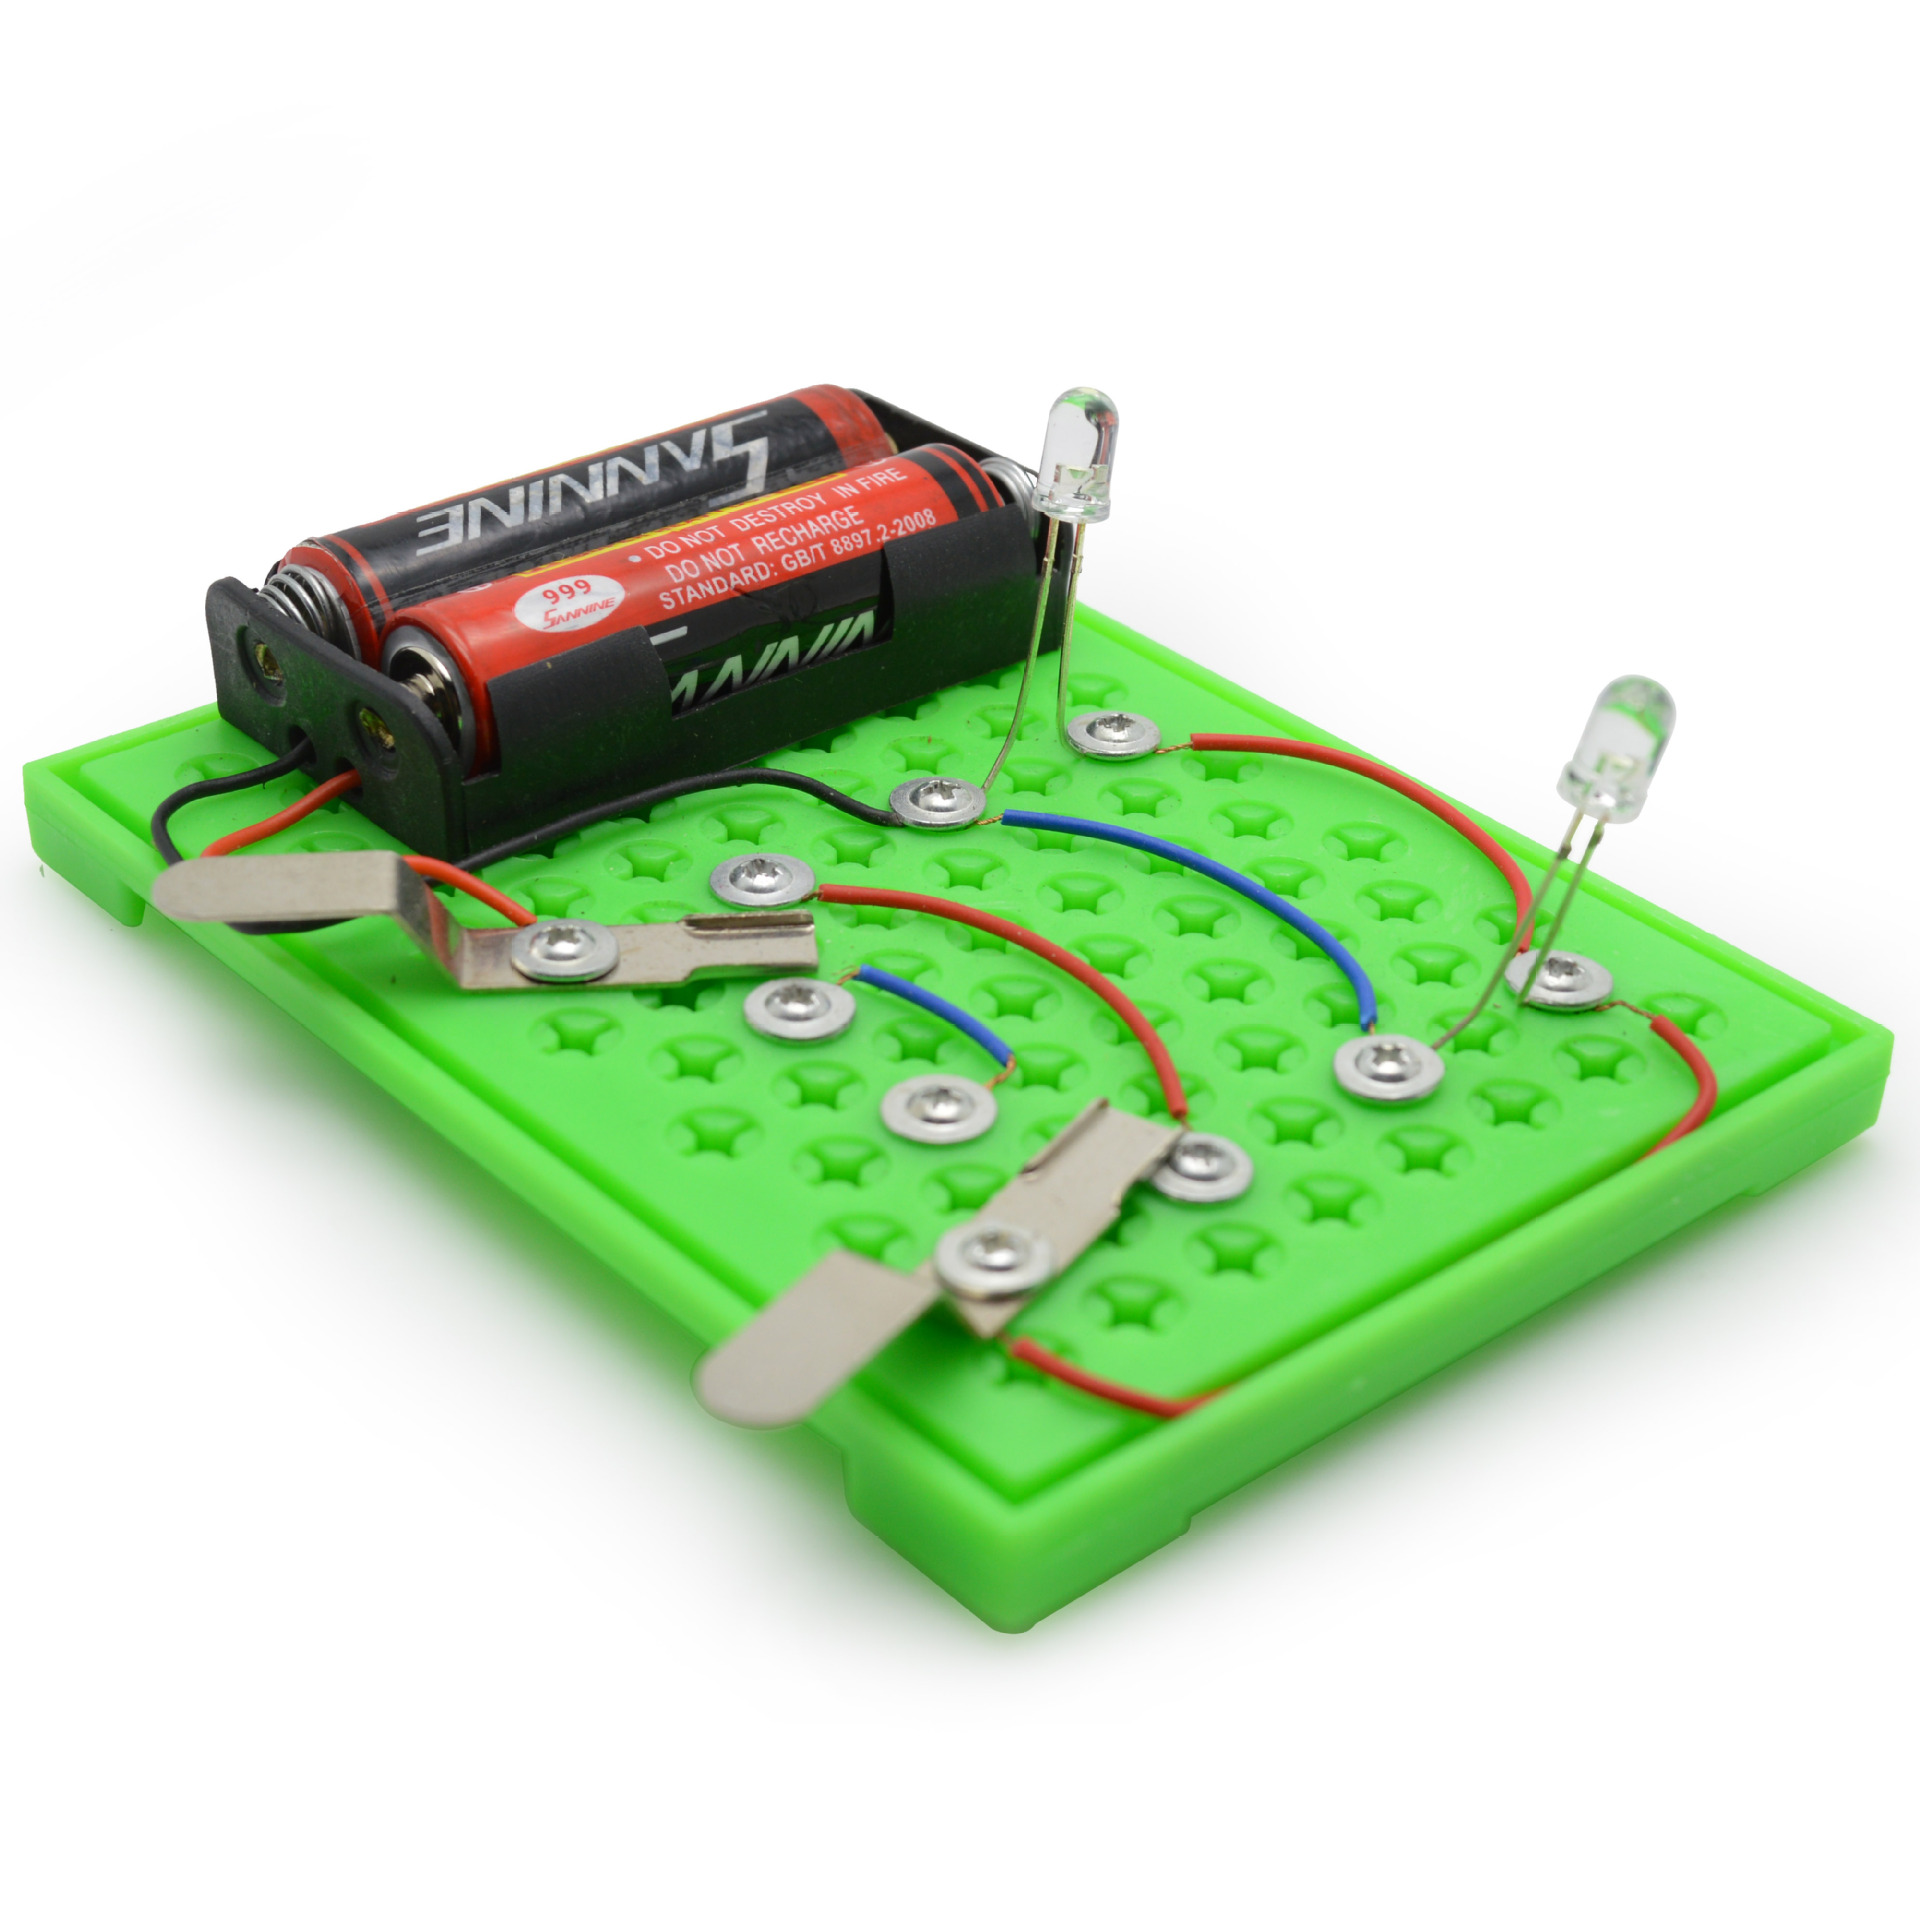 串并联电路DIY双控并联电路科学实验器材科普玩具科技小制作